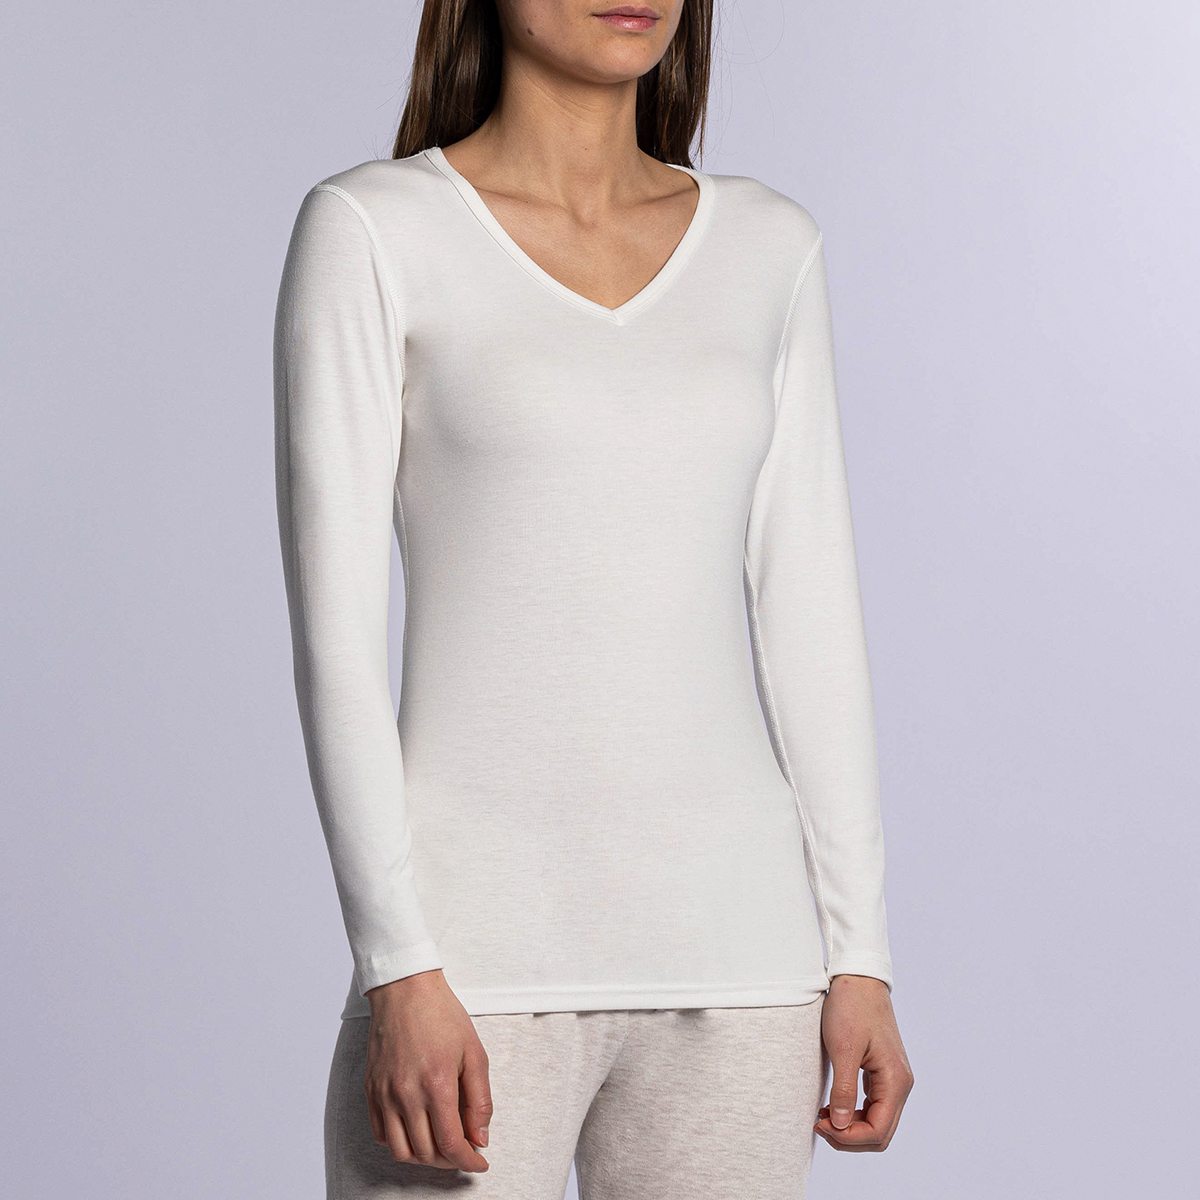 T-shirt manches longues thermique femme blanc